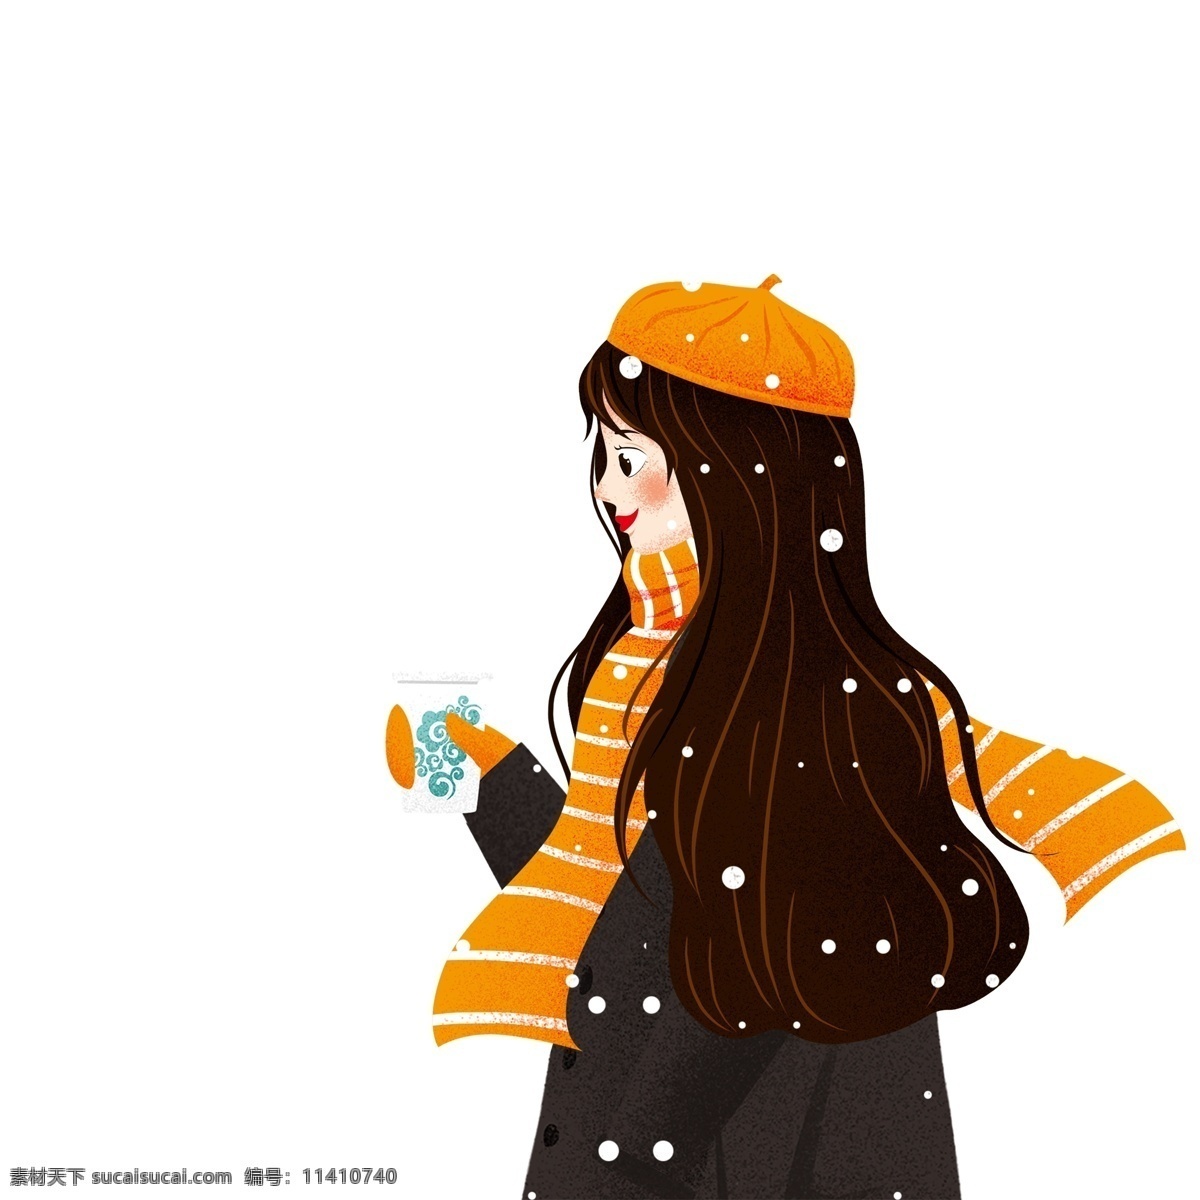 小 清新 一杯 热 咖啡 女孩 手绘 卡通 小清新 热咖啡 少女 女生 人物 冬季 唯美